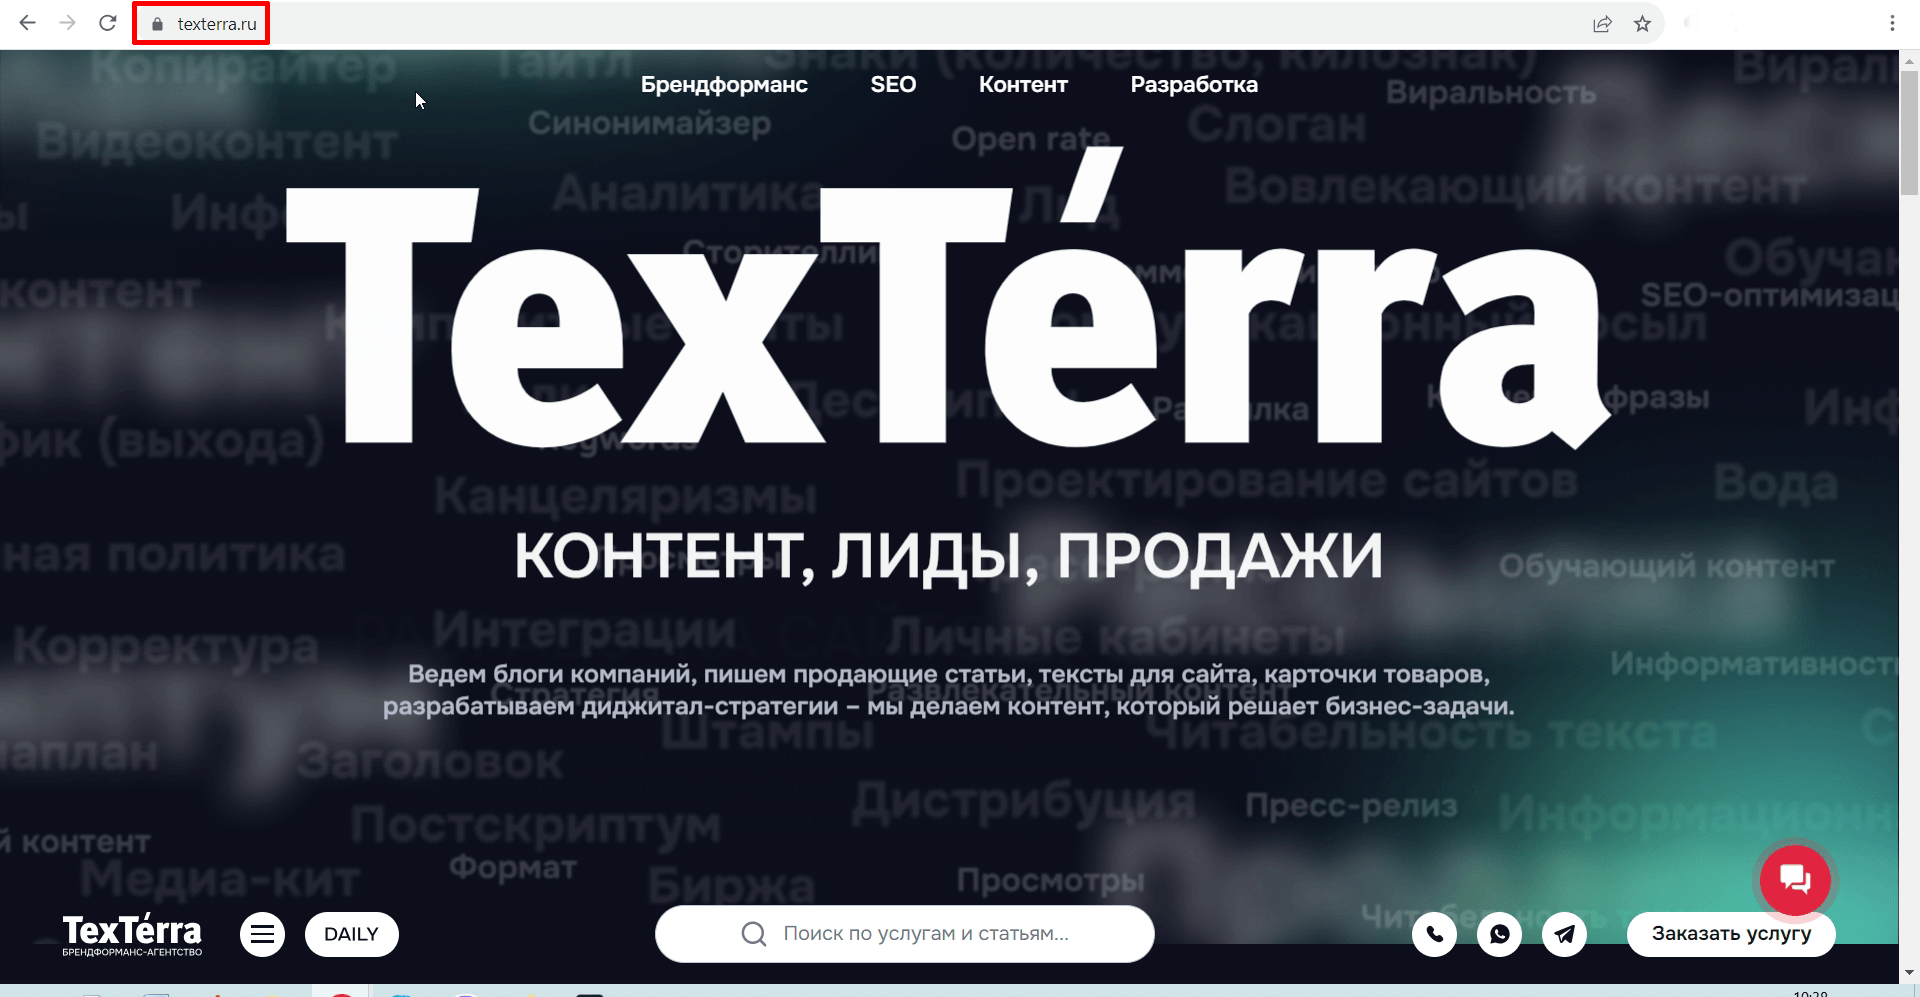 Адрес всех страниц нашего сайта начинается с texterra.ru или с teachline.ru, если страница относится к нашему учебному центру